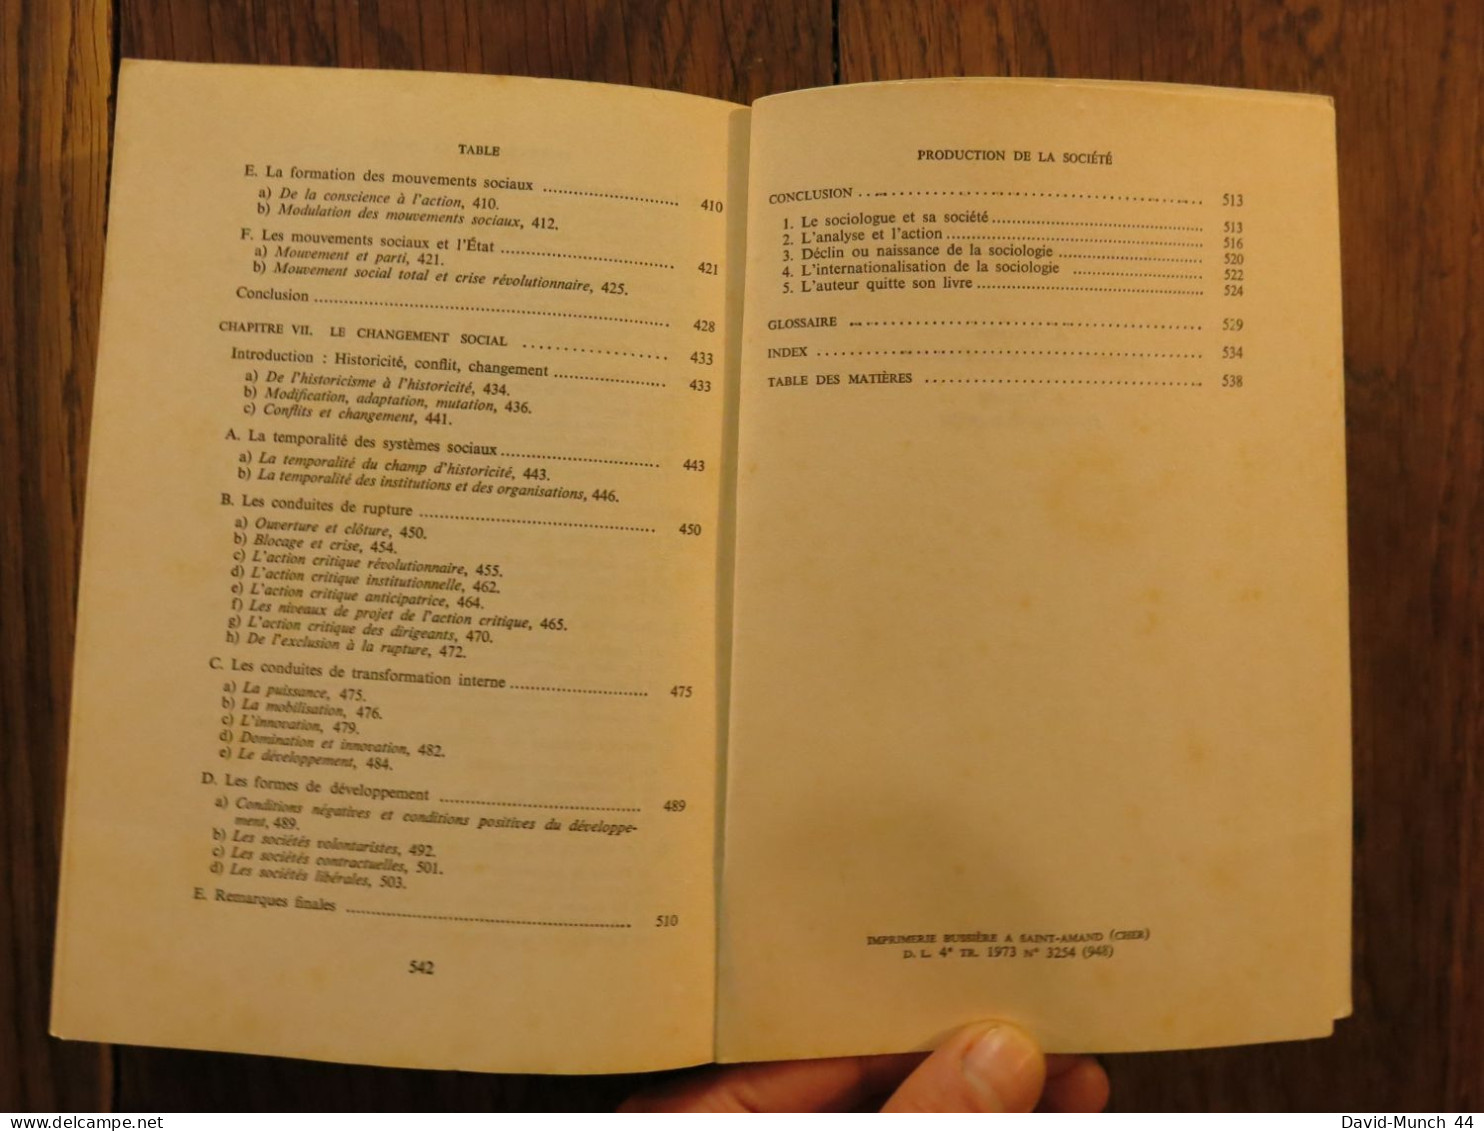 Production de la société de Alain Touraine. Editions du Seuil, Collection Sociologie, Paris. 1973